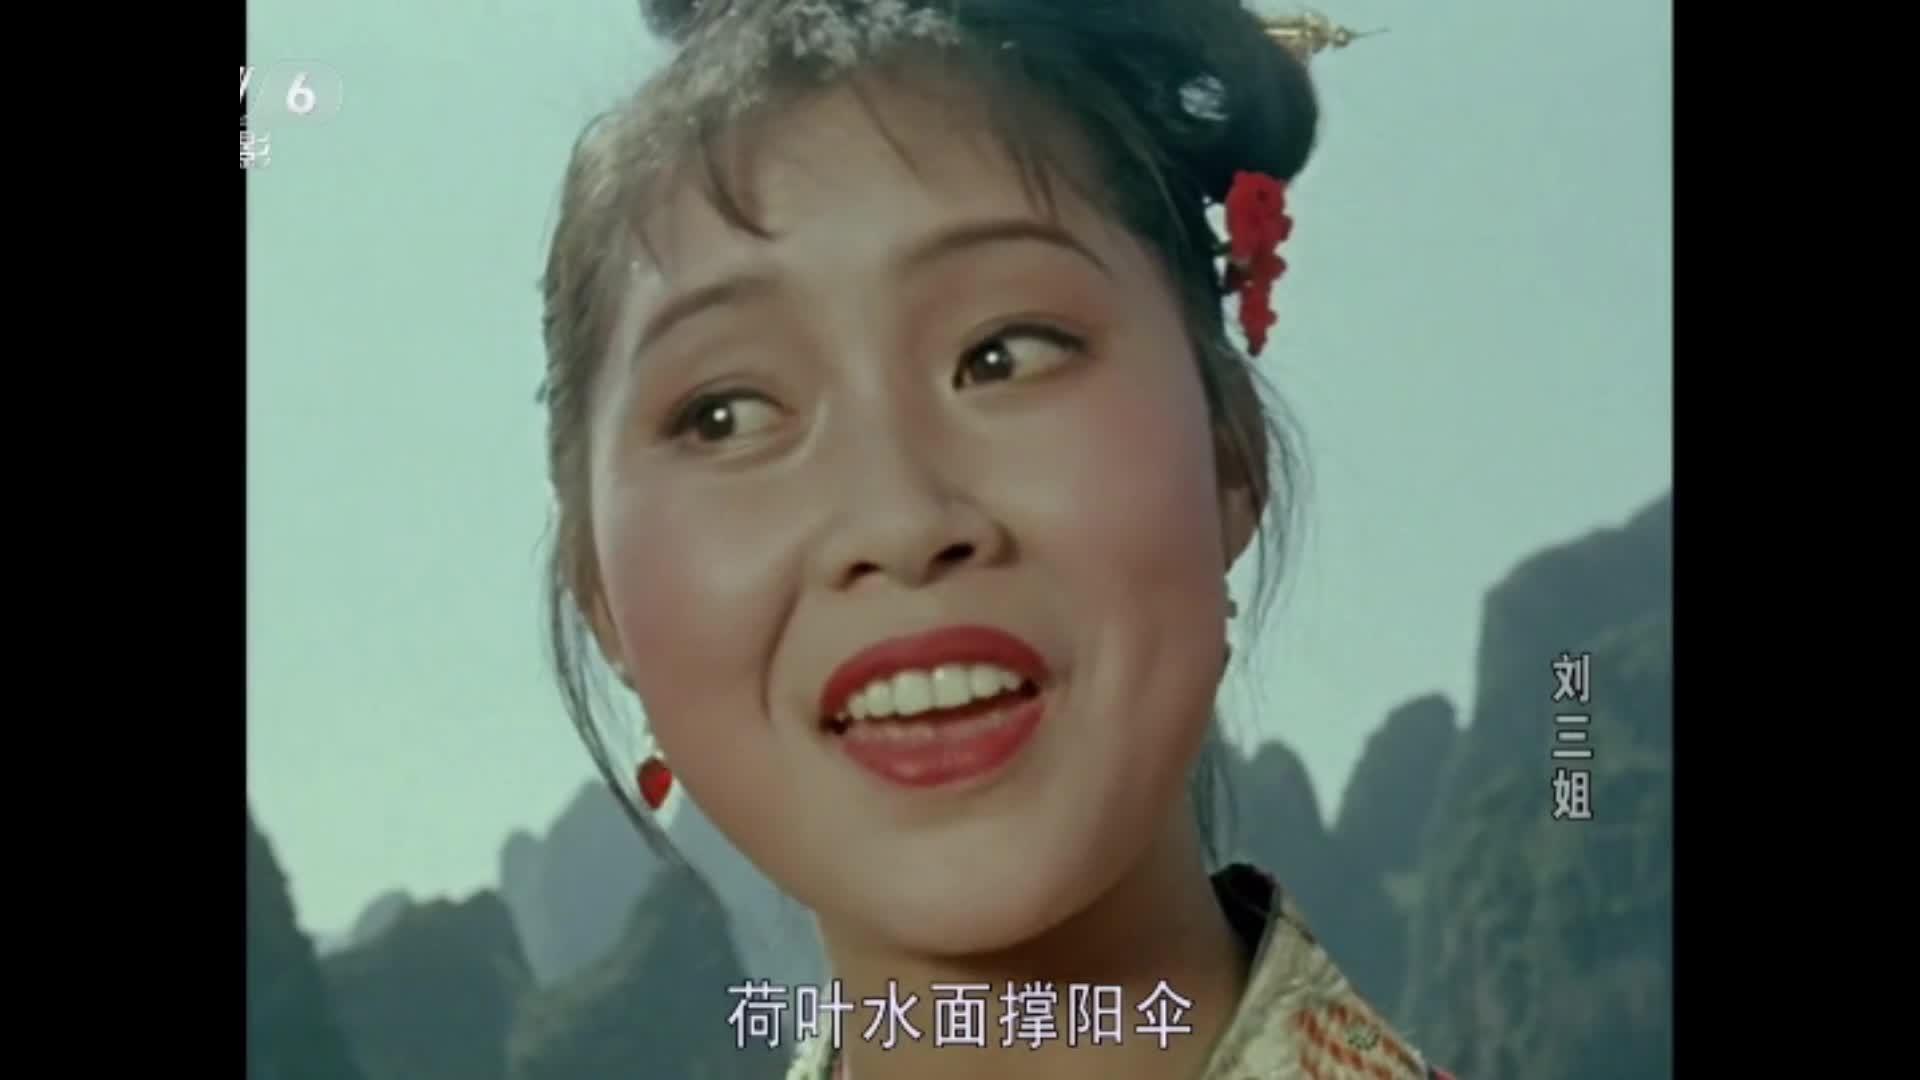 【中外老电影】《刘三姐》中的主要演员近况如何?